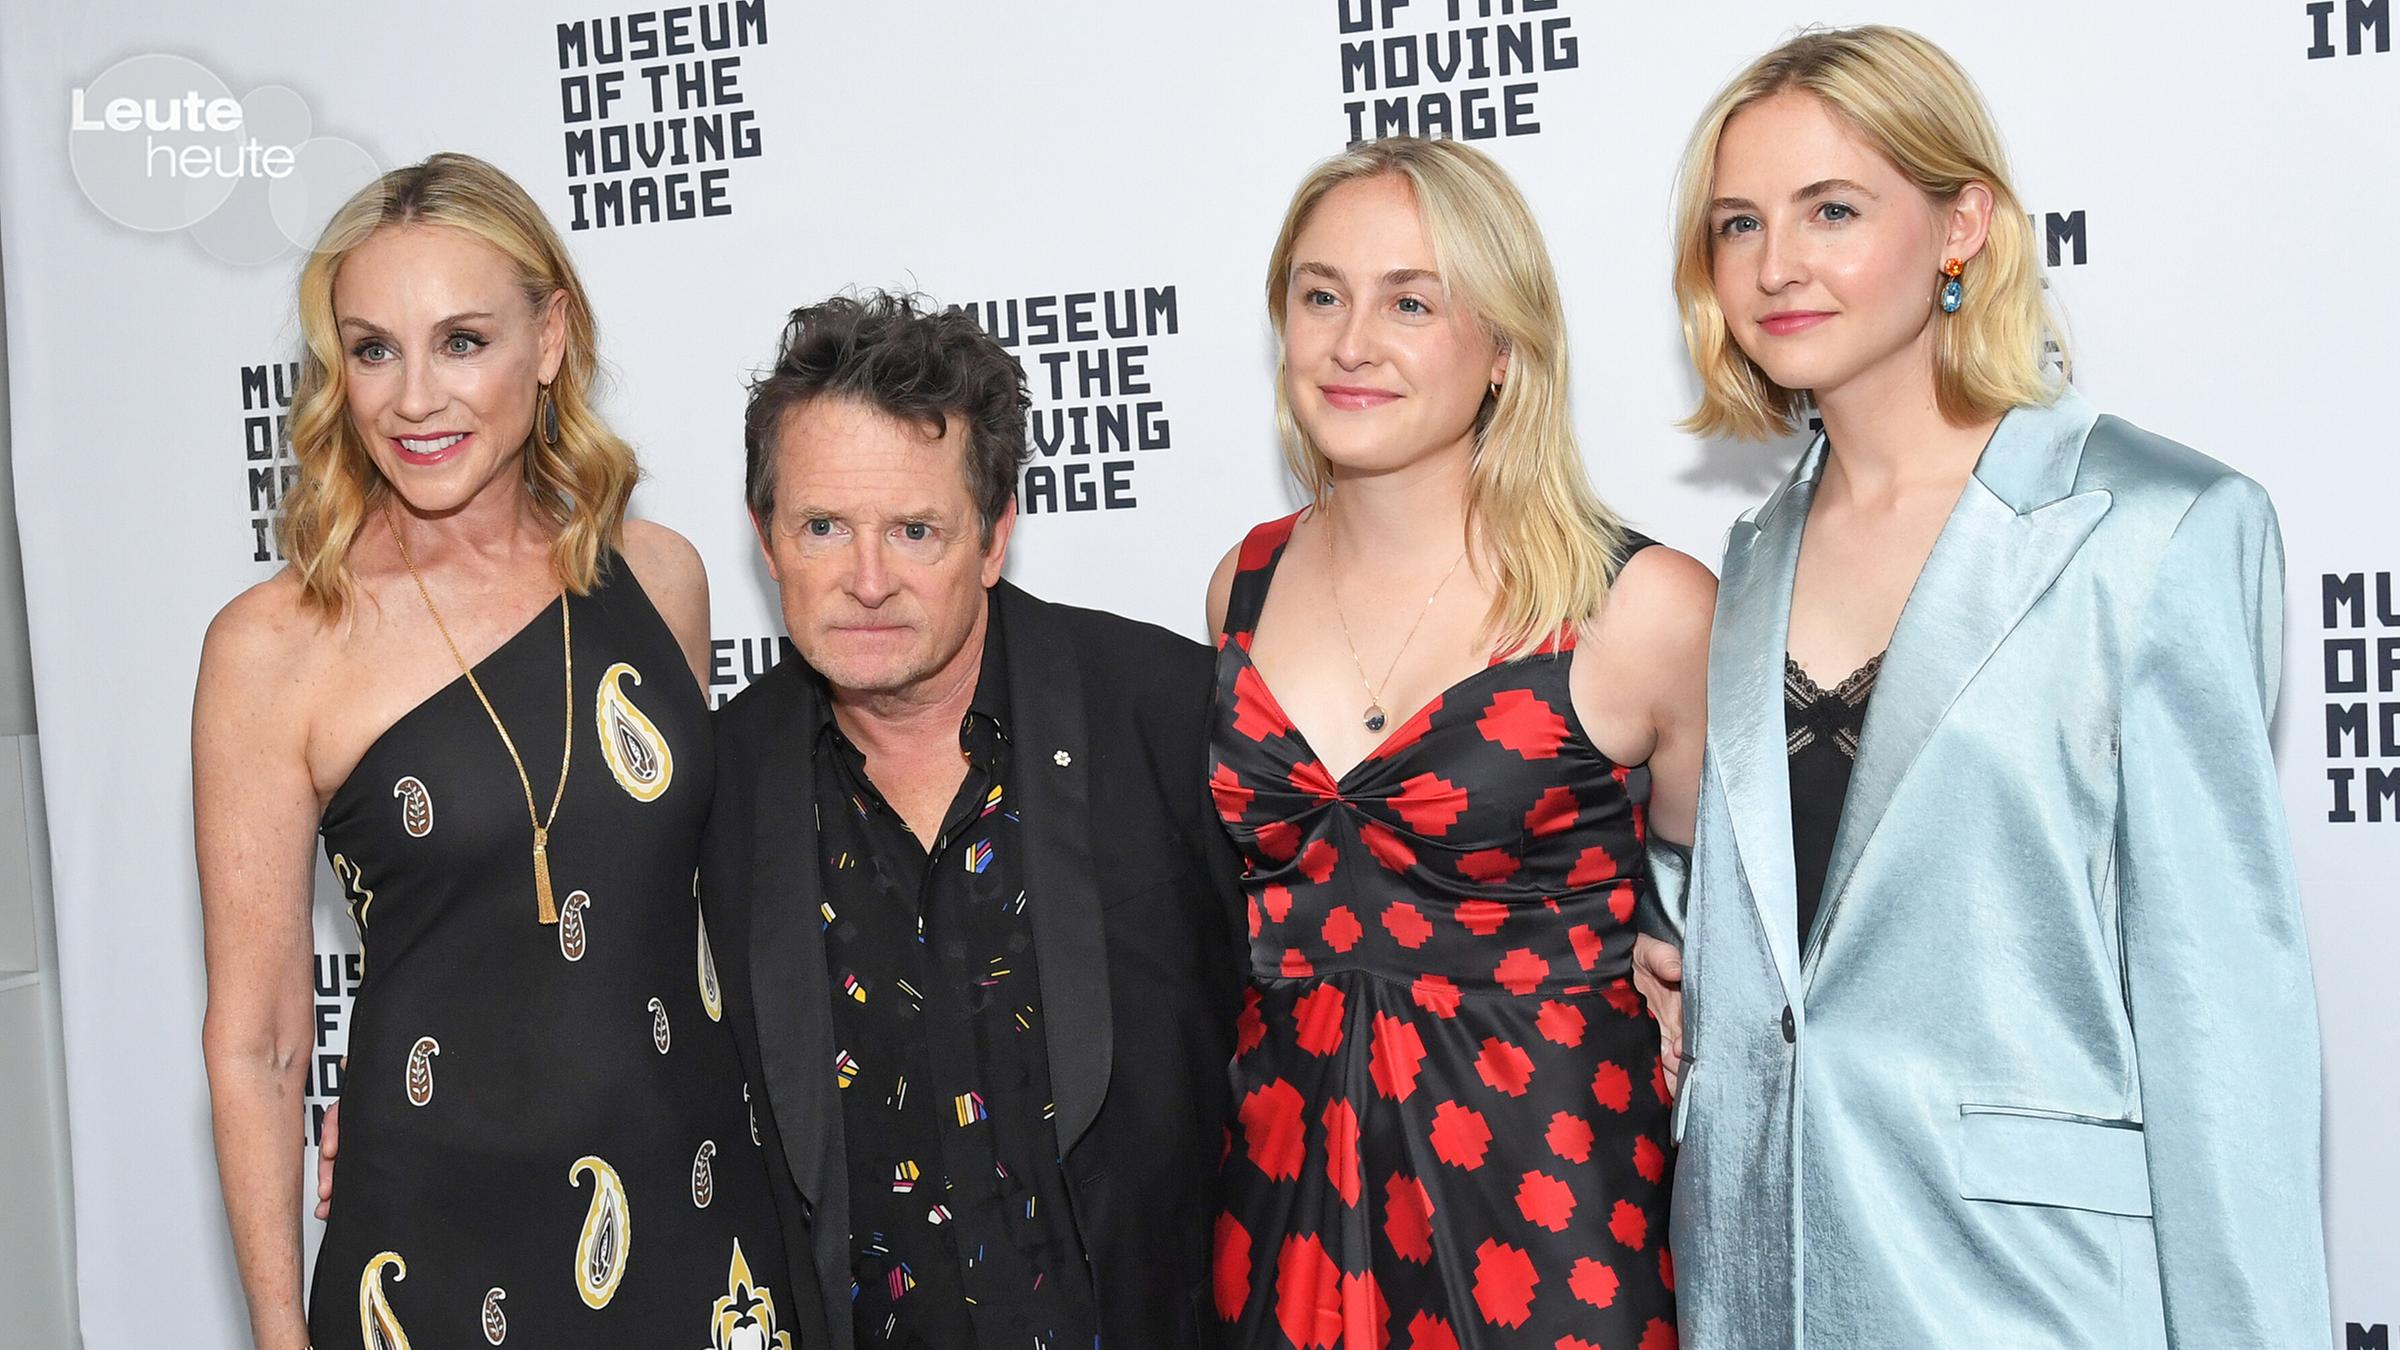 Hollywoodstar Michael J. Fox mit seiner Frau und seinen Zwillingstöchtern auf dem roten Teppich bei den Spring Moving Image Awards.